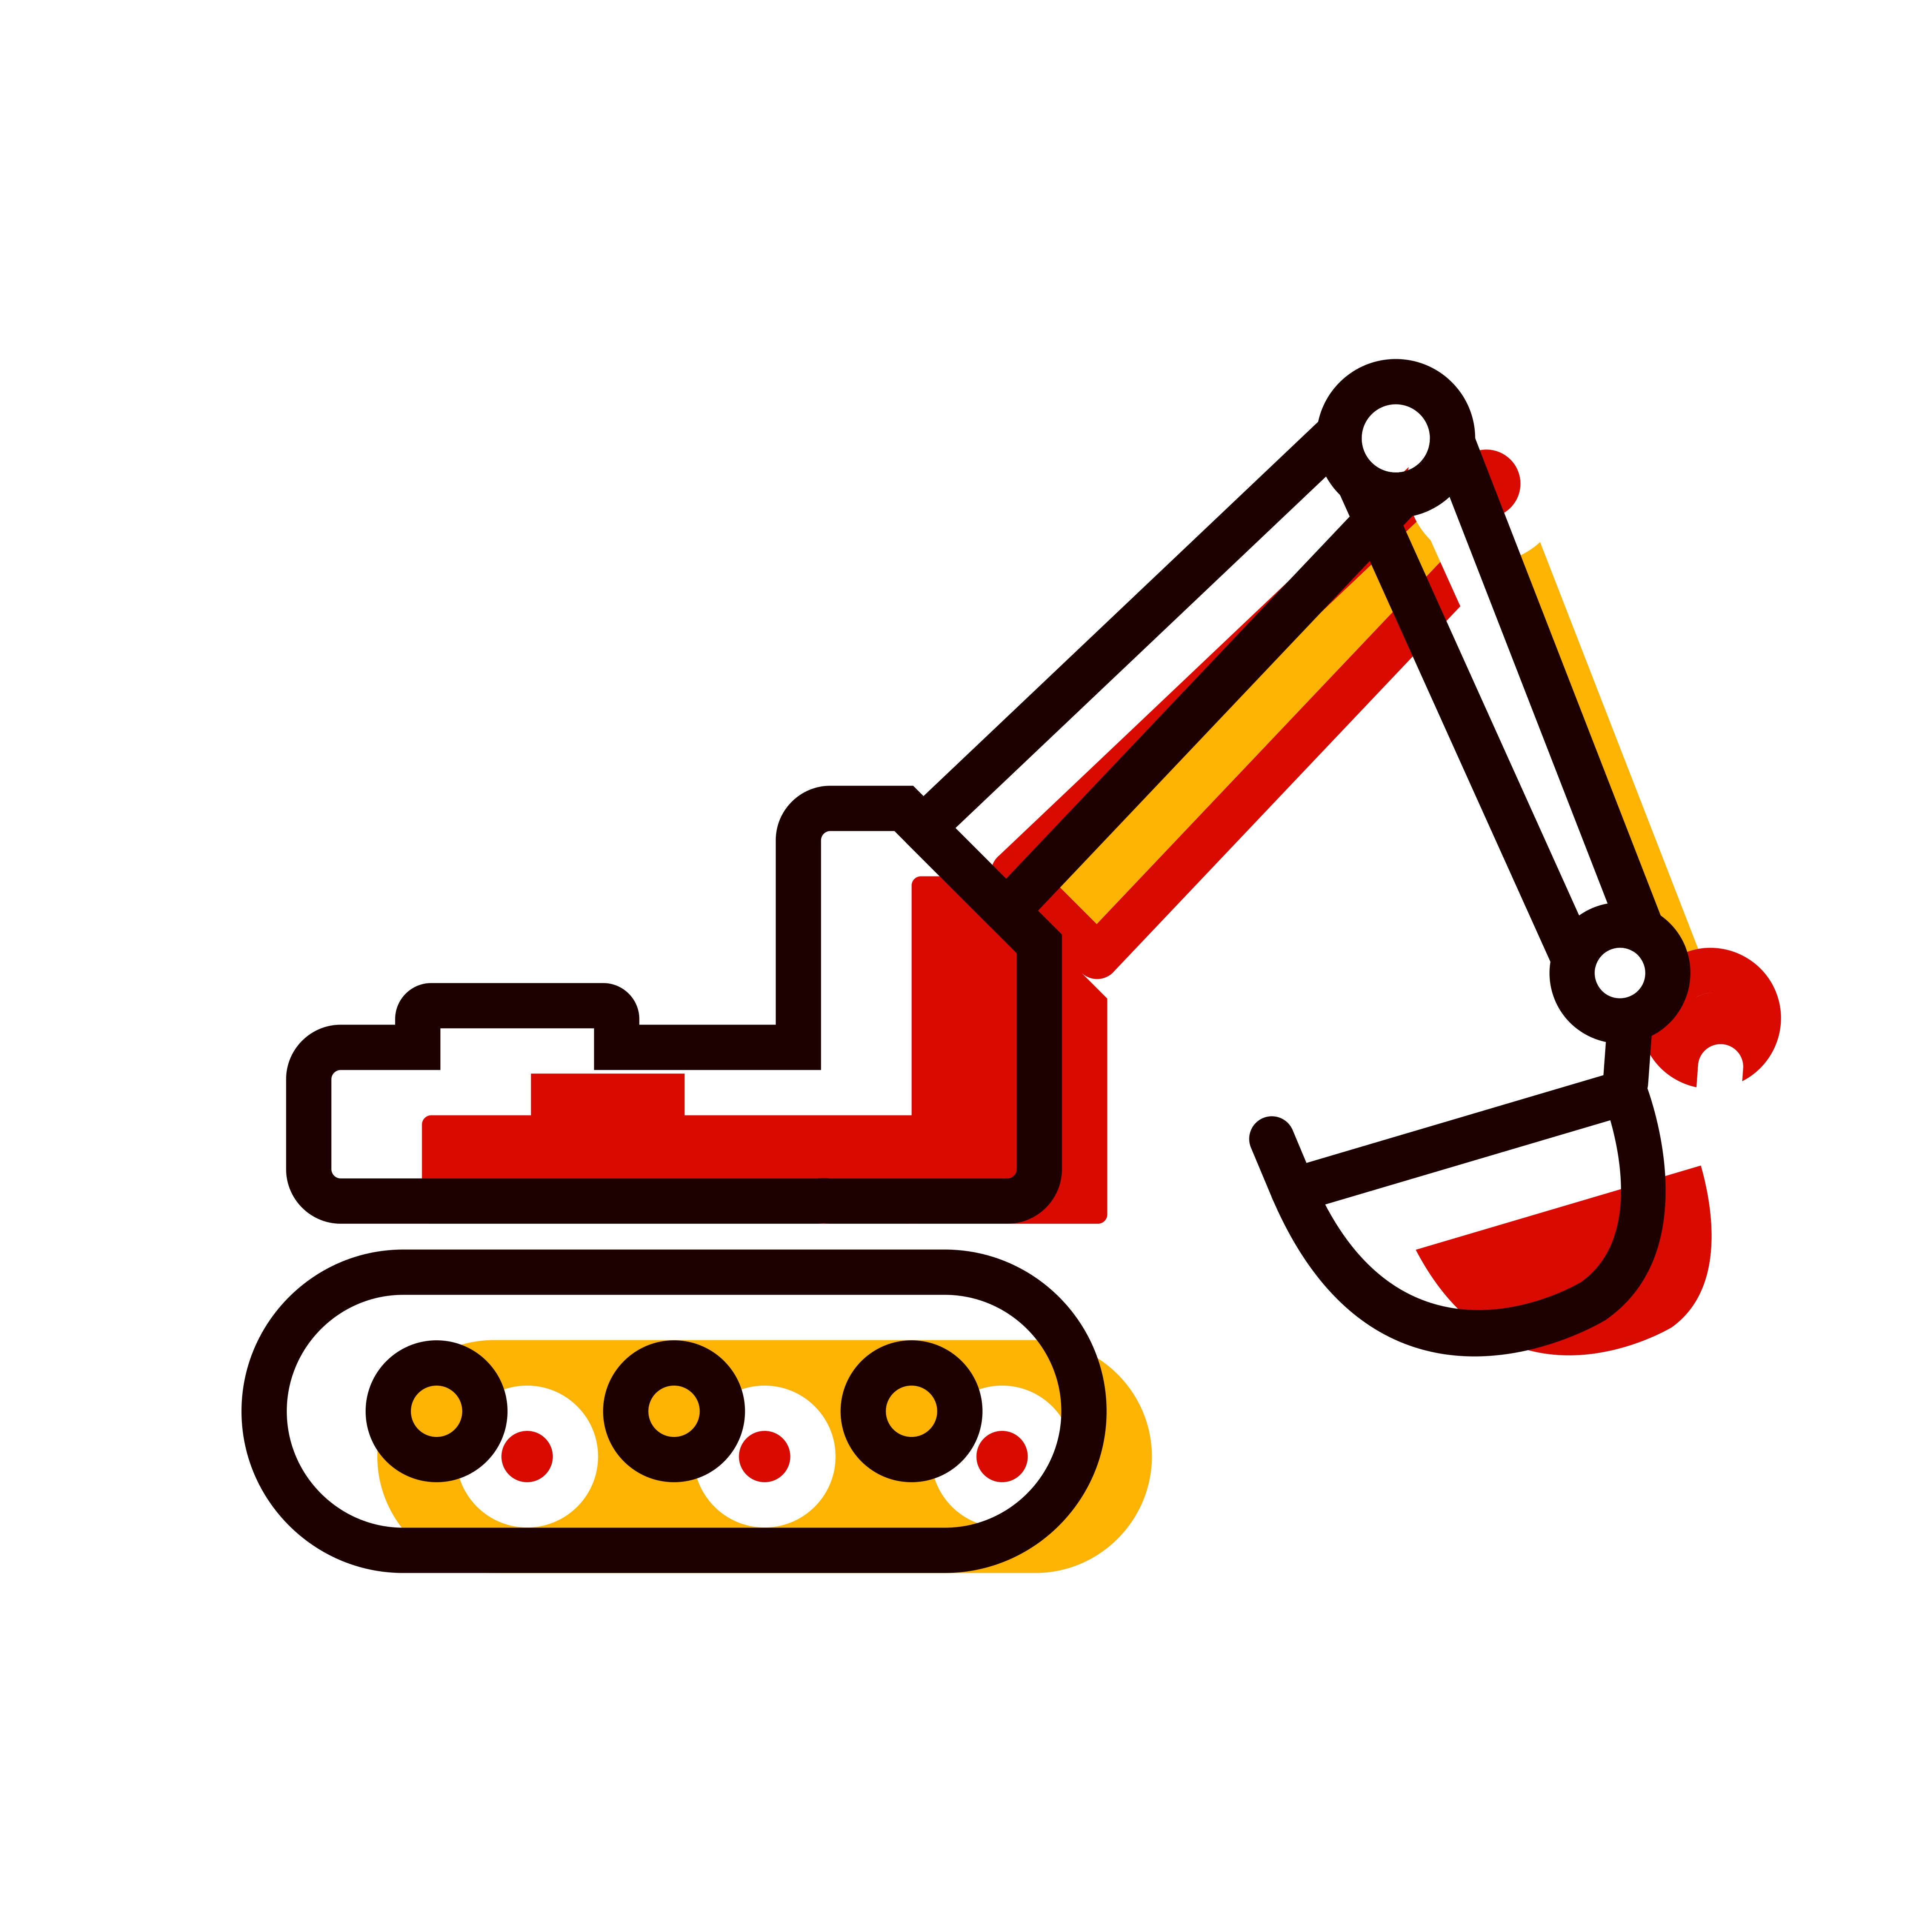 Download Excavator Icon Design 506025 - Download Free Vectors, Clipart Graphics & Vector Art